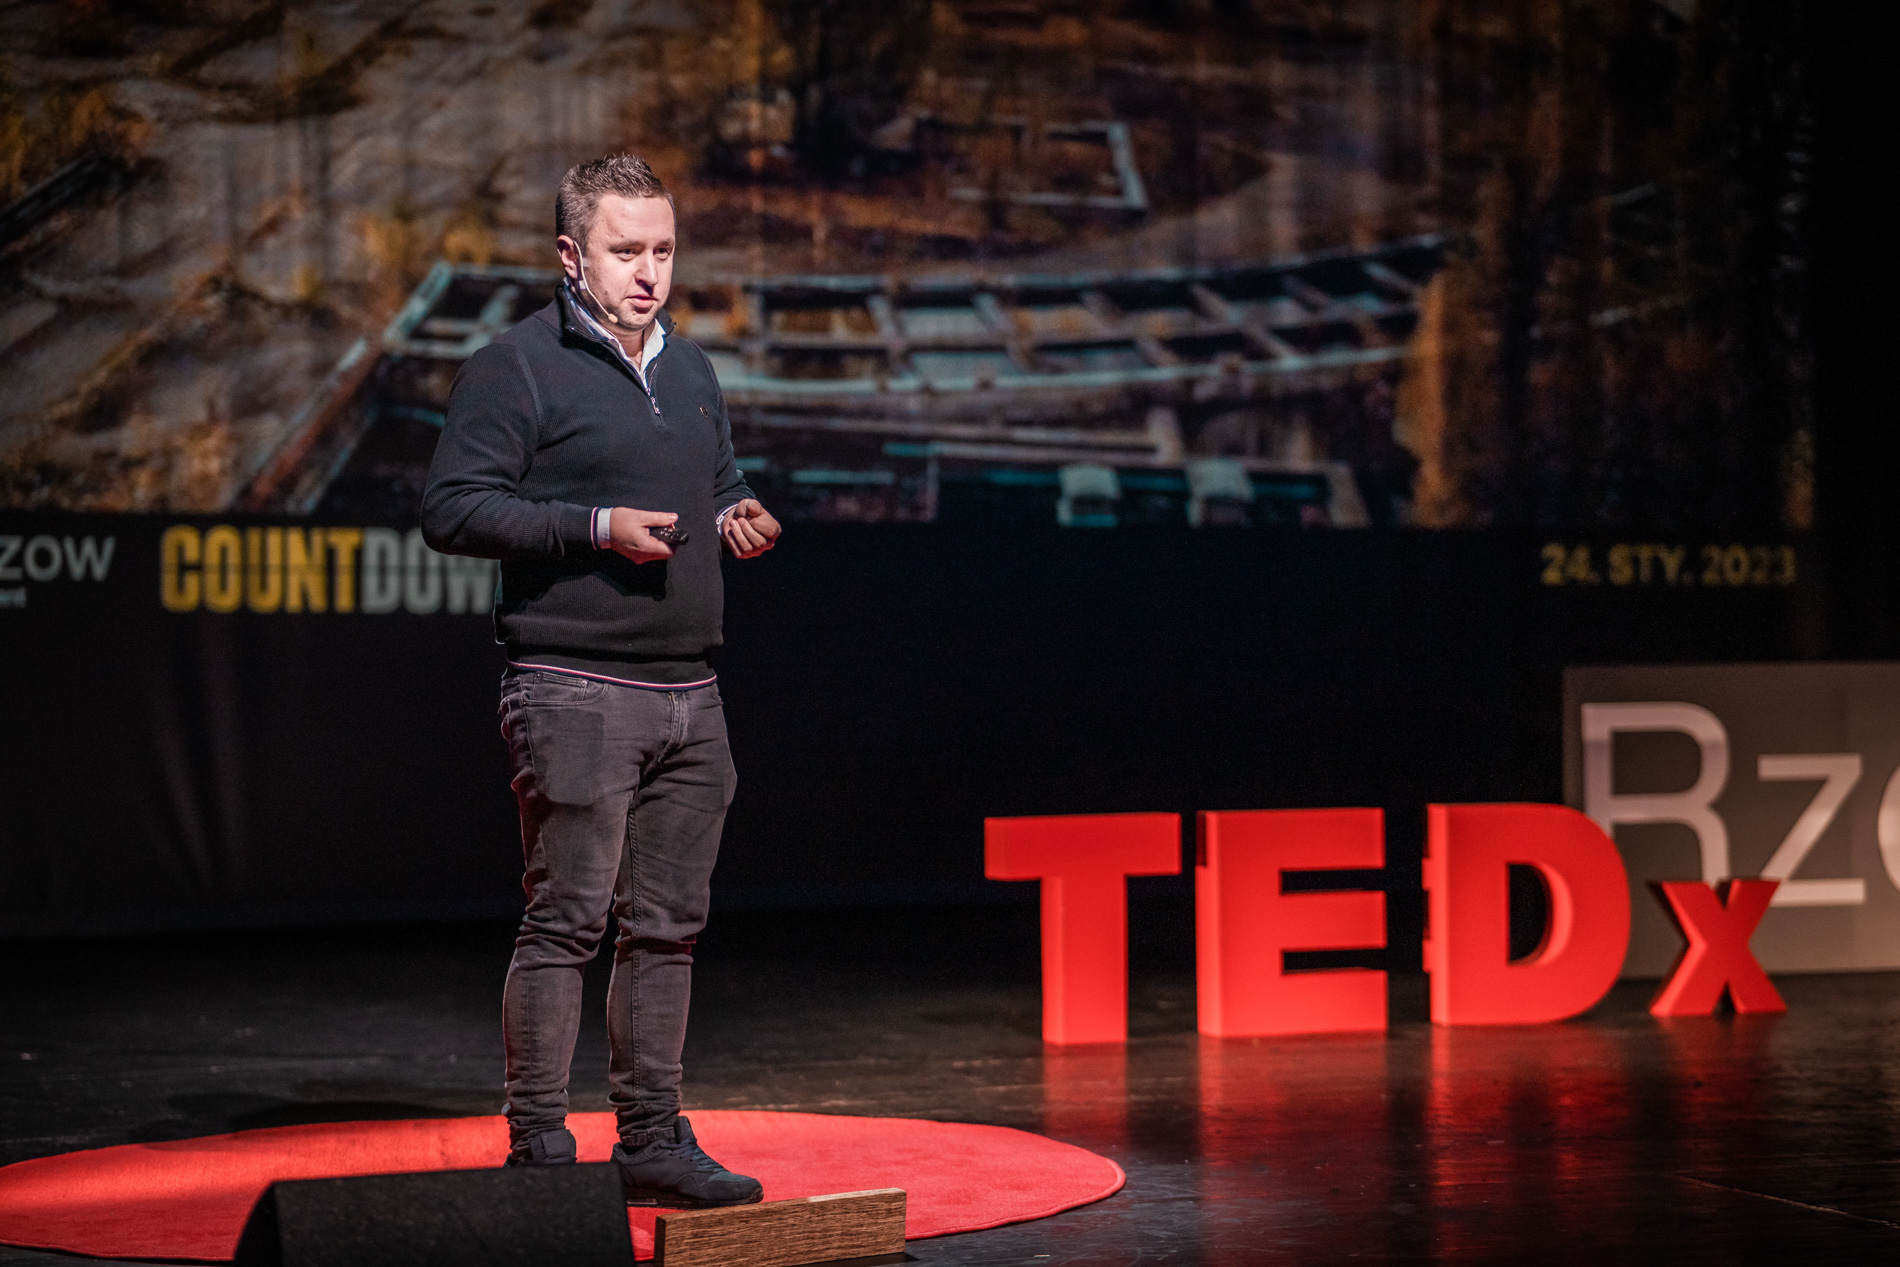 Prelegent Piotr Pietras w trakcie swojego wystąpienia podczas wydarzenia TEDx Rzeszów Countdown WSIiZ